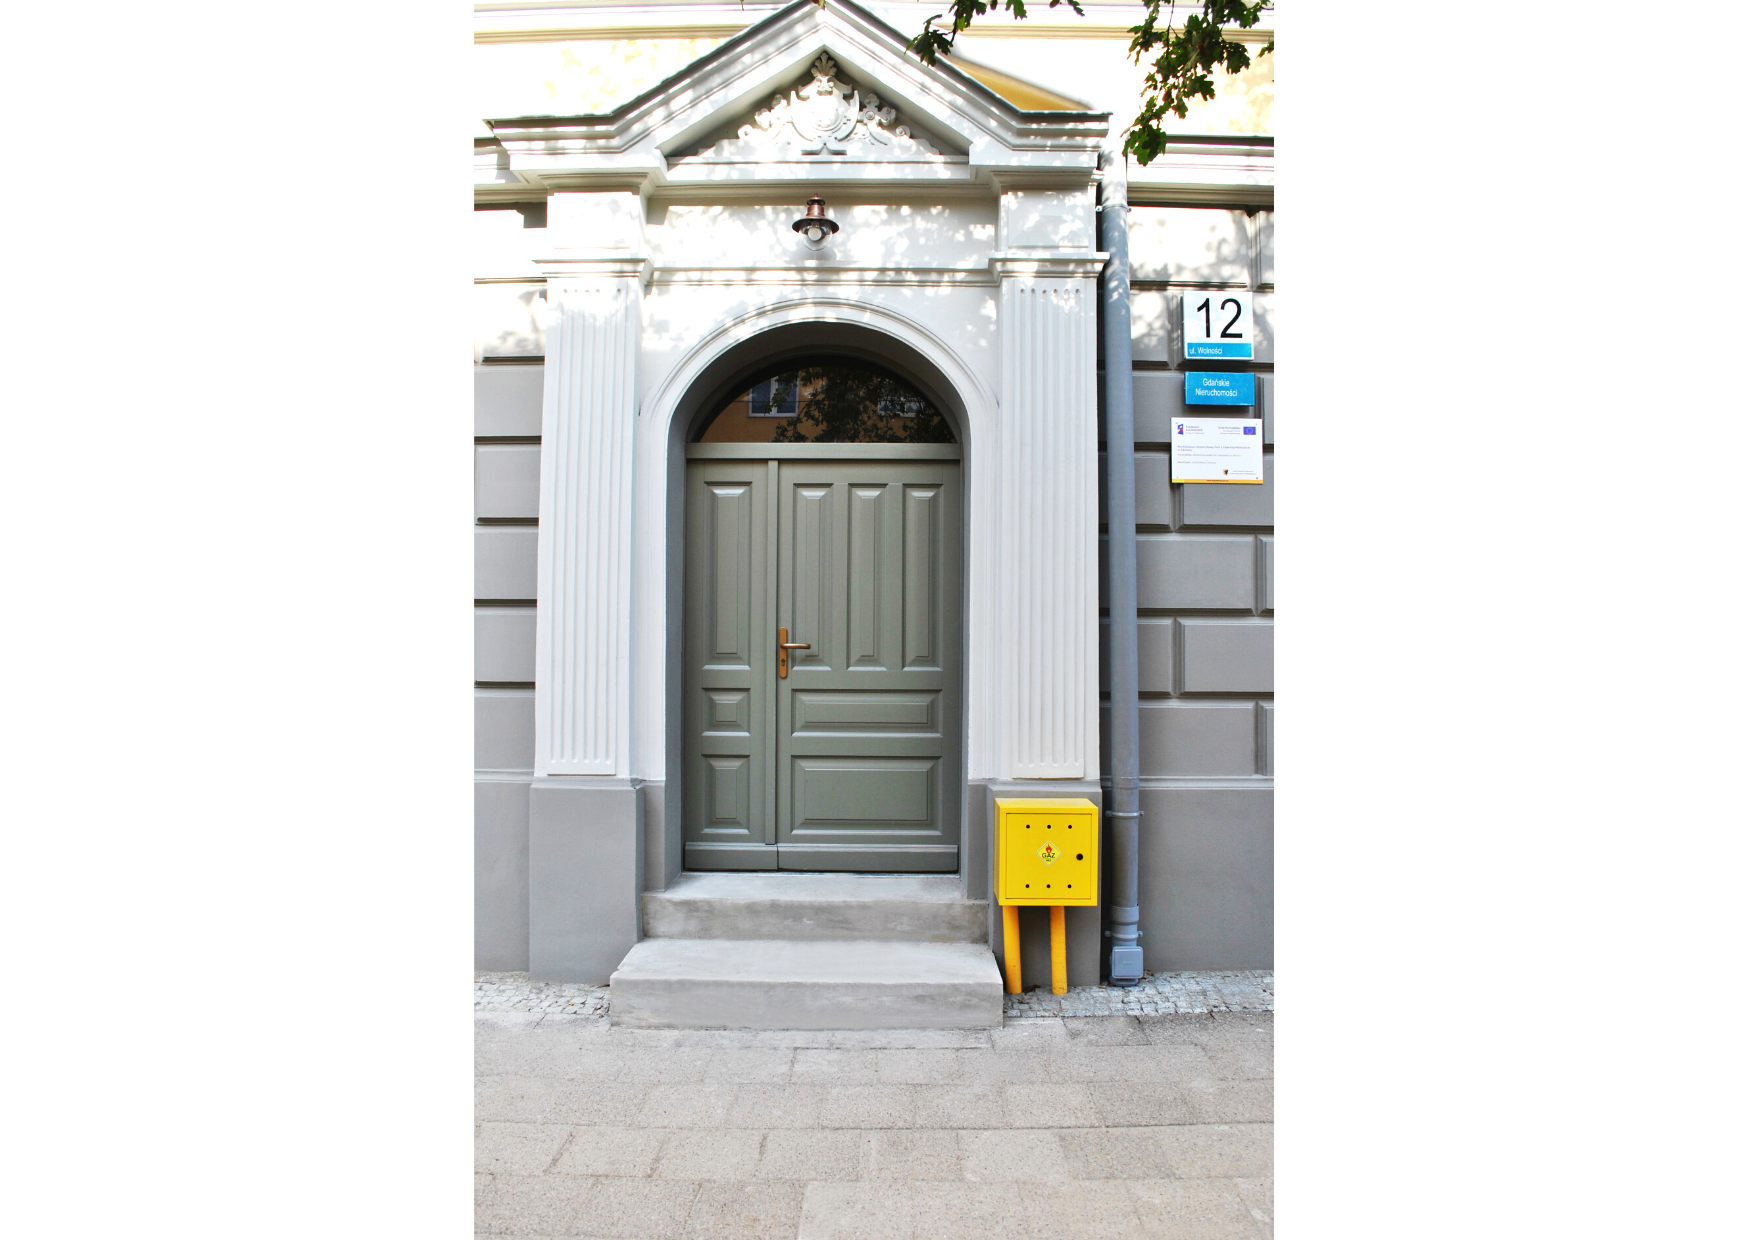 Portal wejściowy do budynku z odrestaurowanymi detalami architektonicznymi.